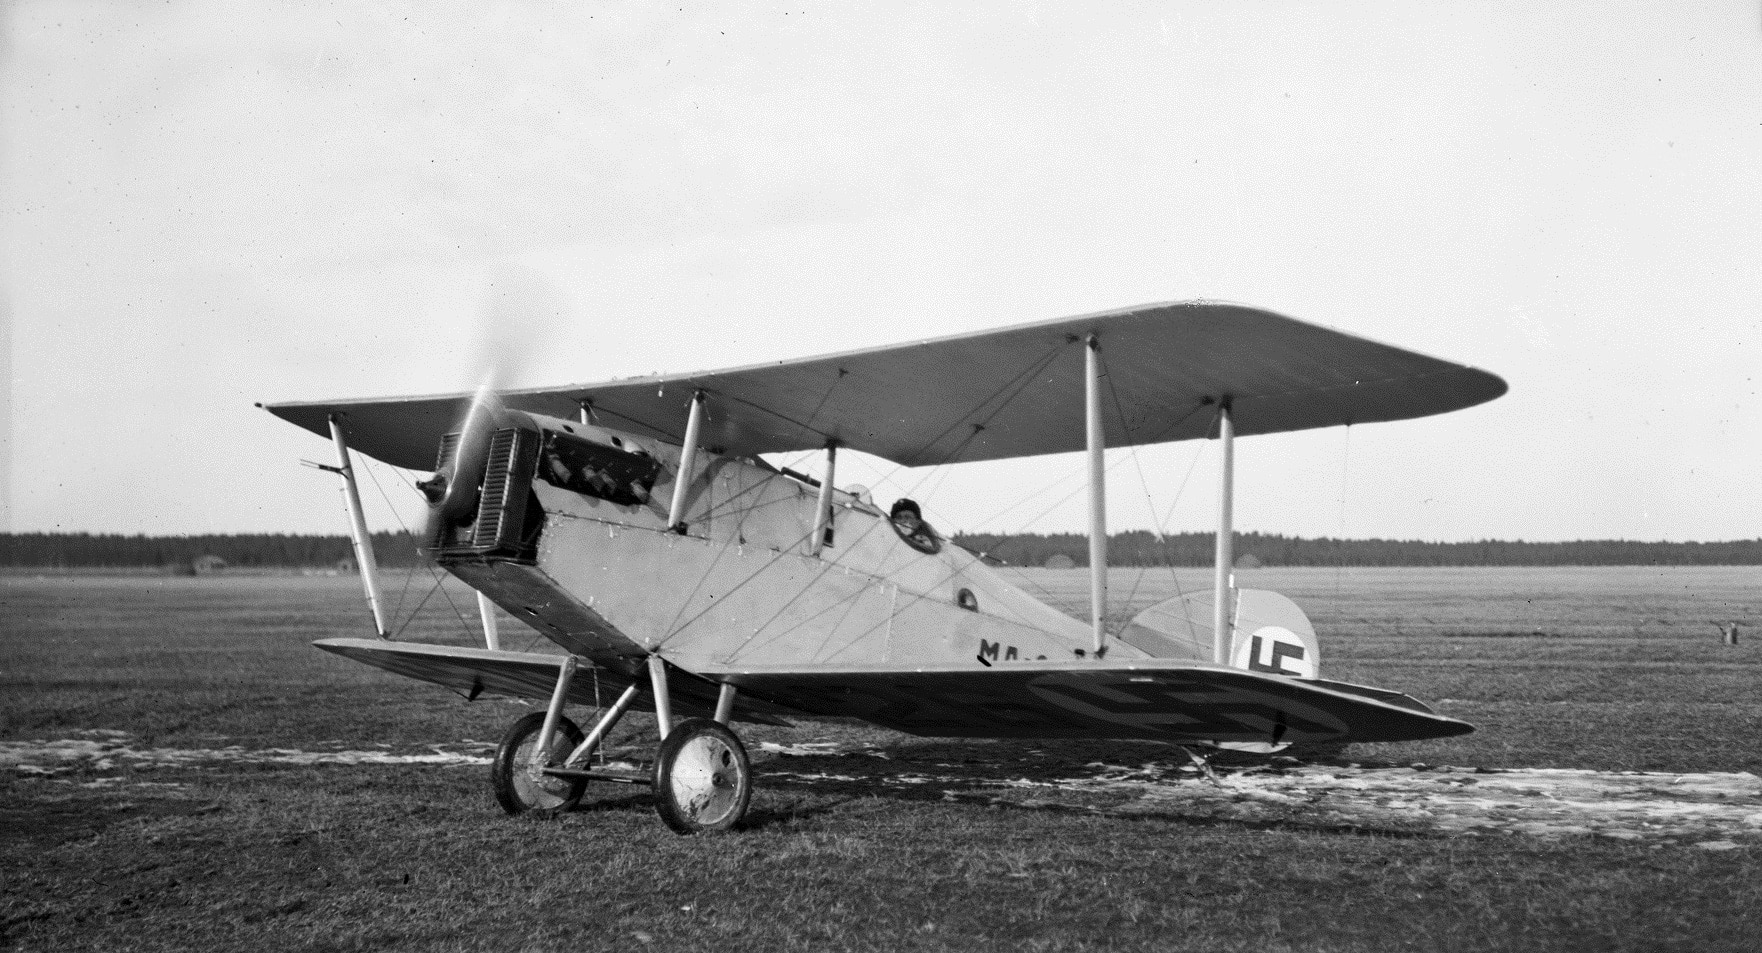 Vanha kuva Martinsyde-lentokoneesta nurmikentällä.